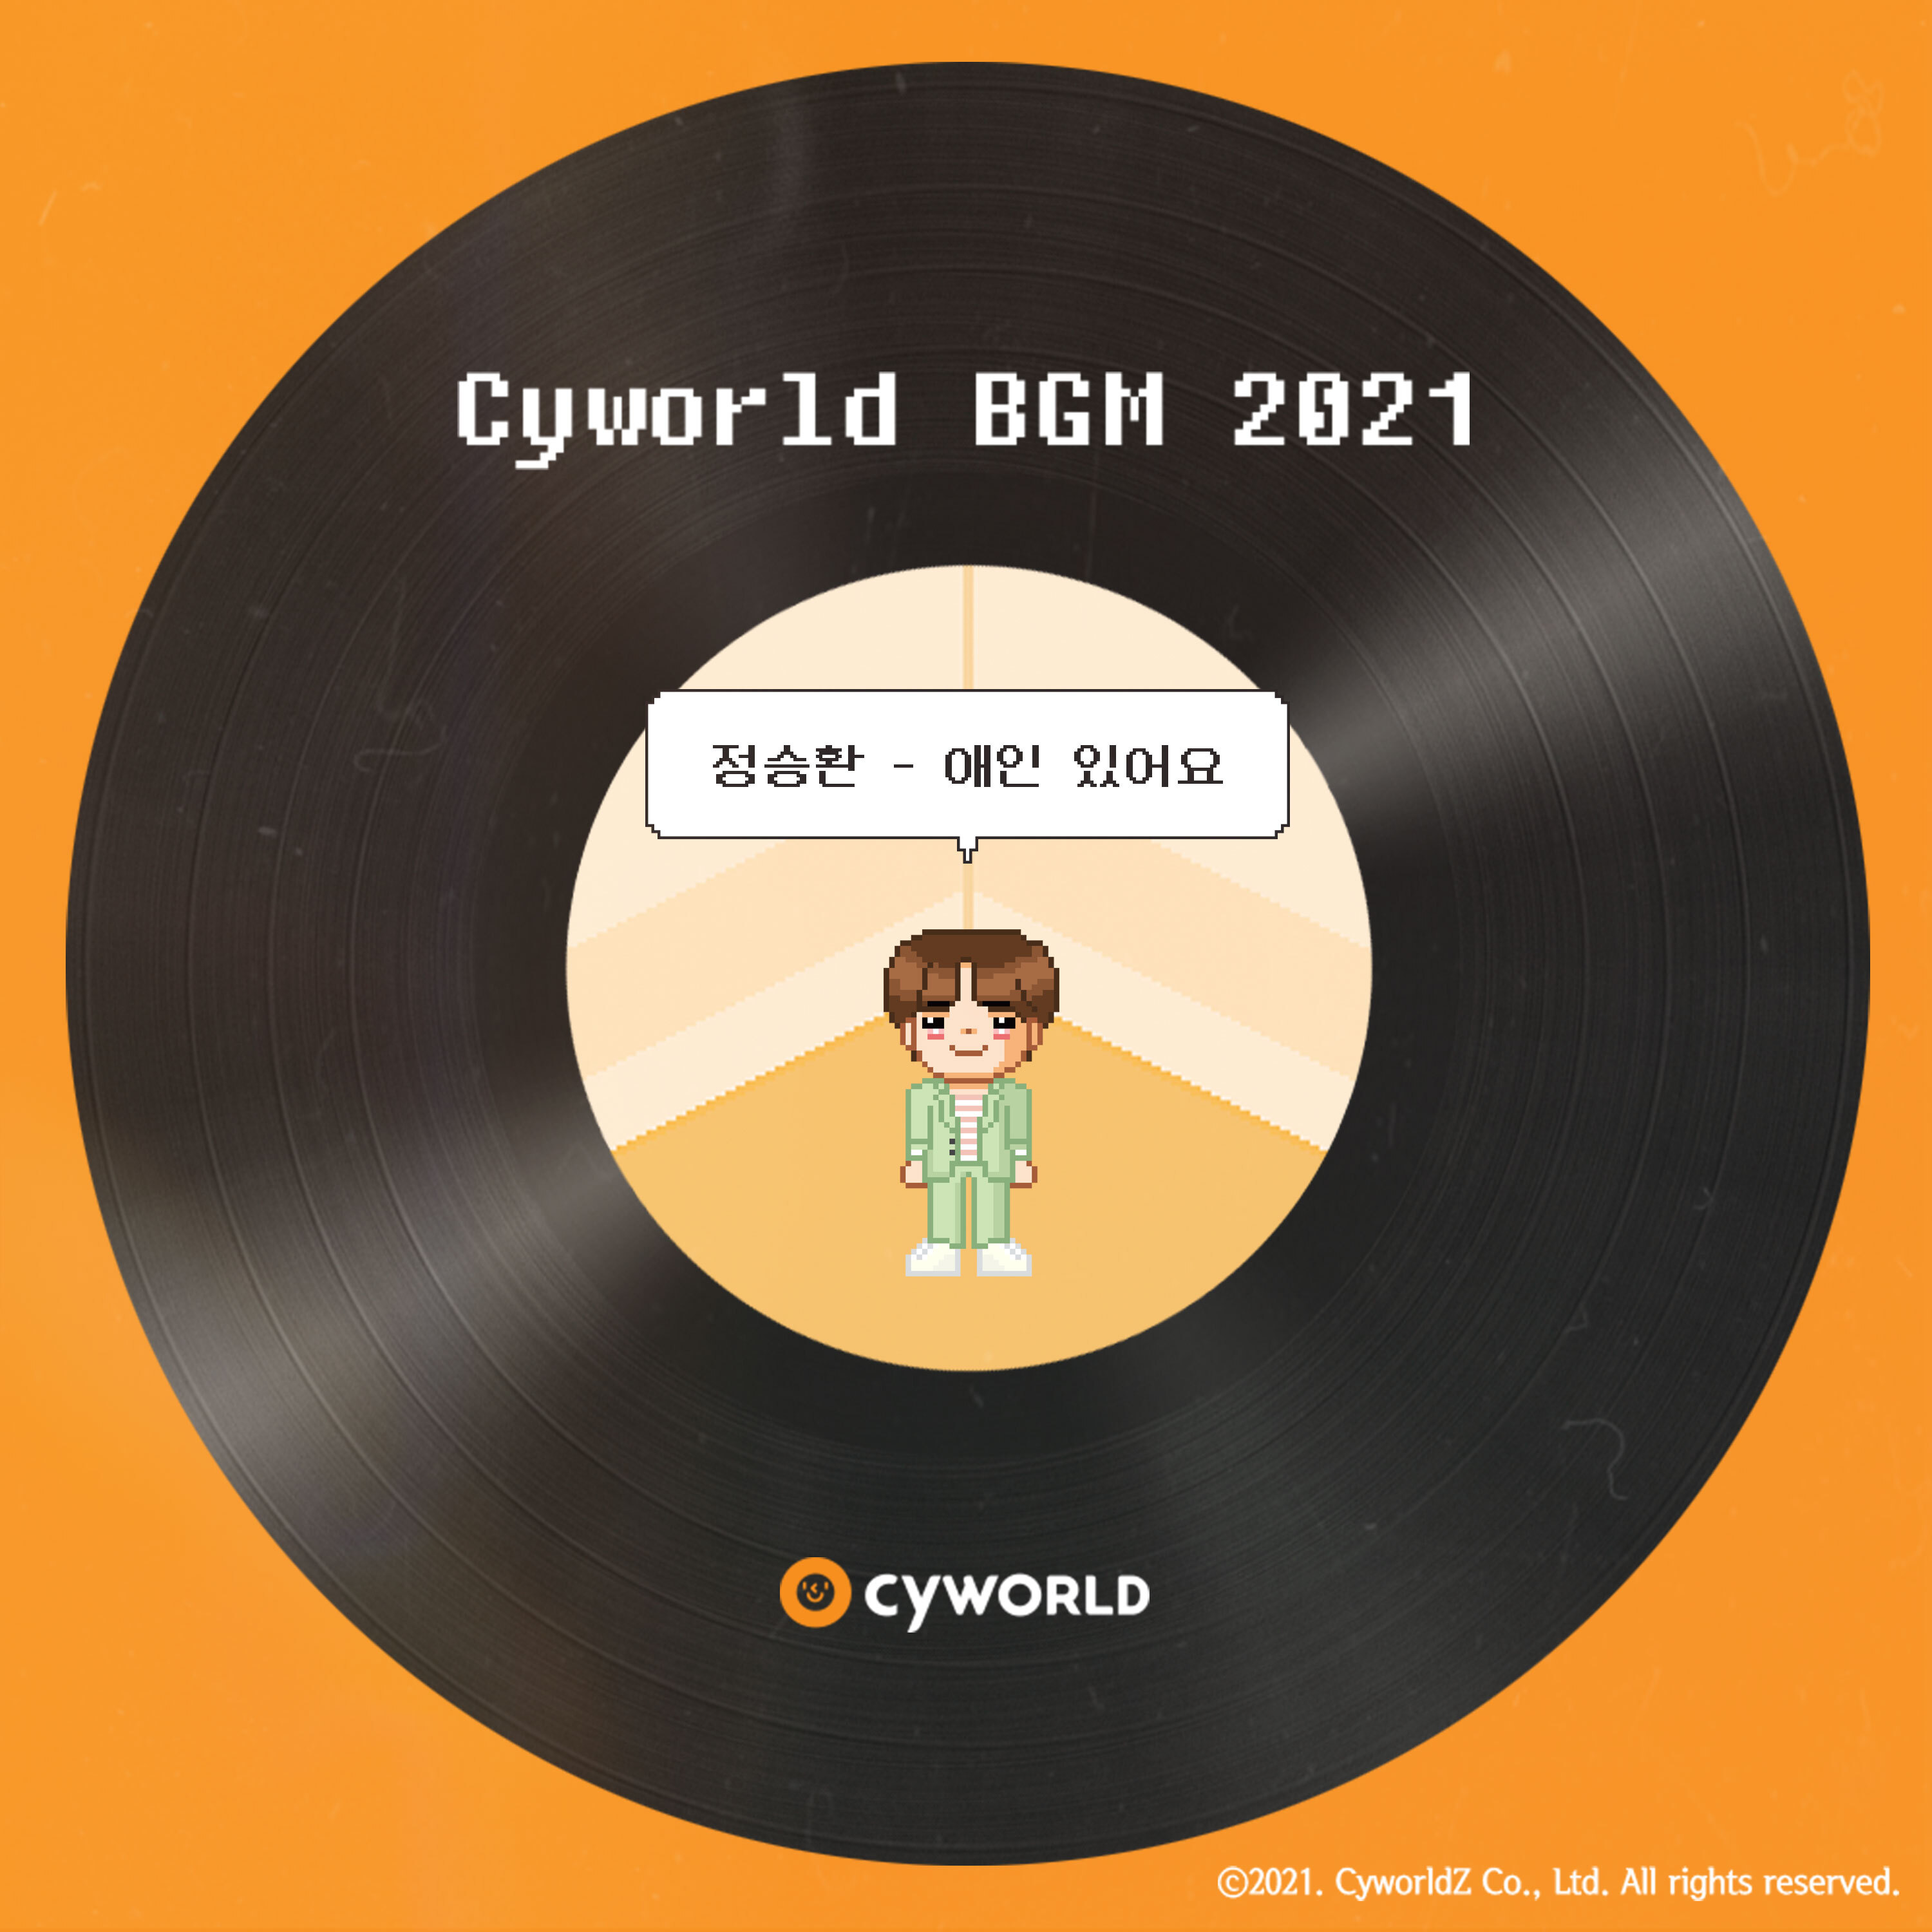 [情報] 鄭承煥 - 我有愛人了 Cyworld BGM 2021